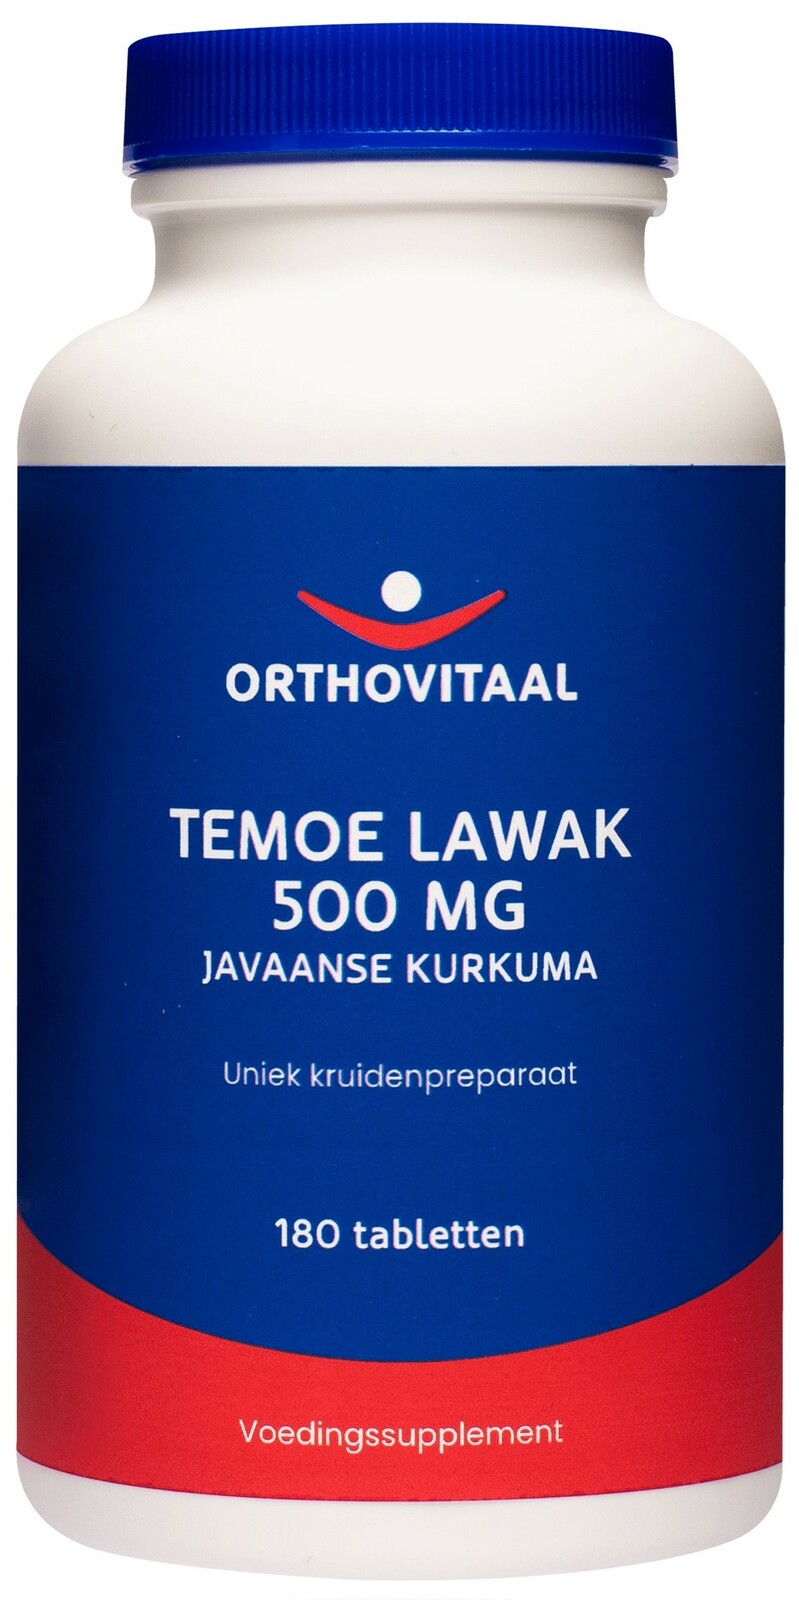 Orthovitaal Temoe Lawak 500 mg Tabletten